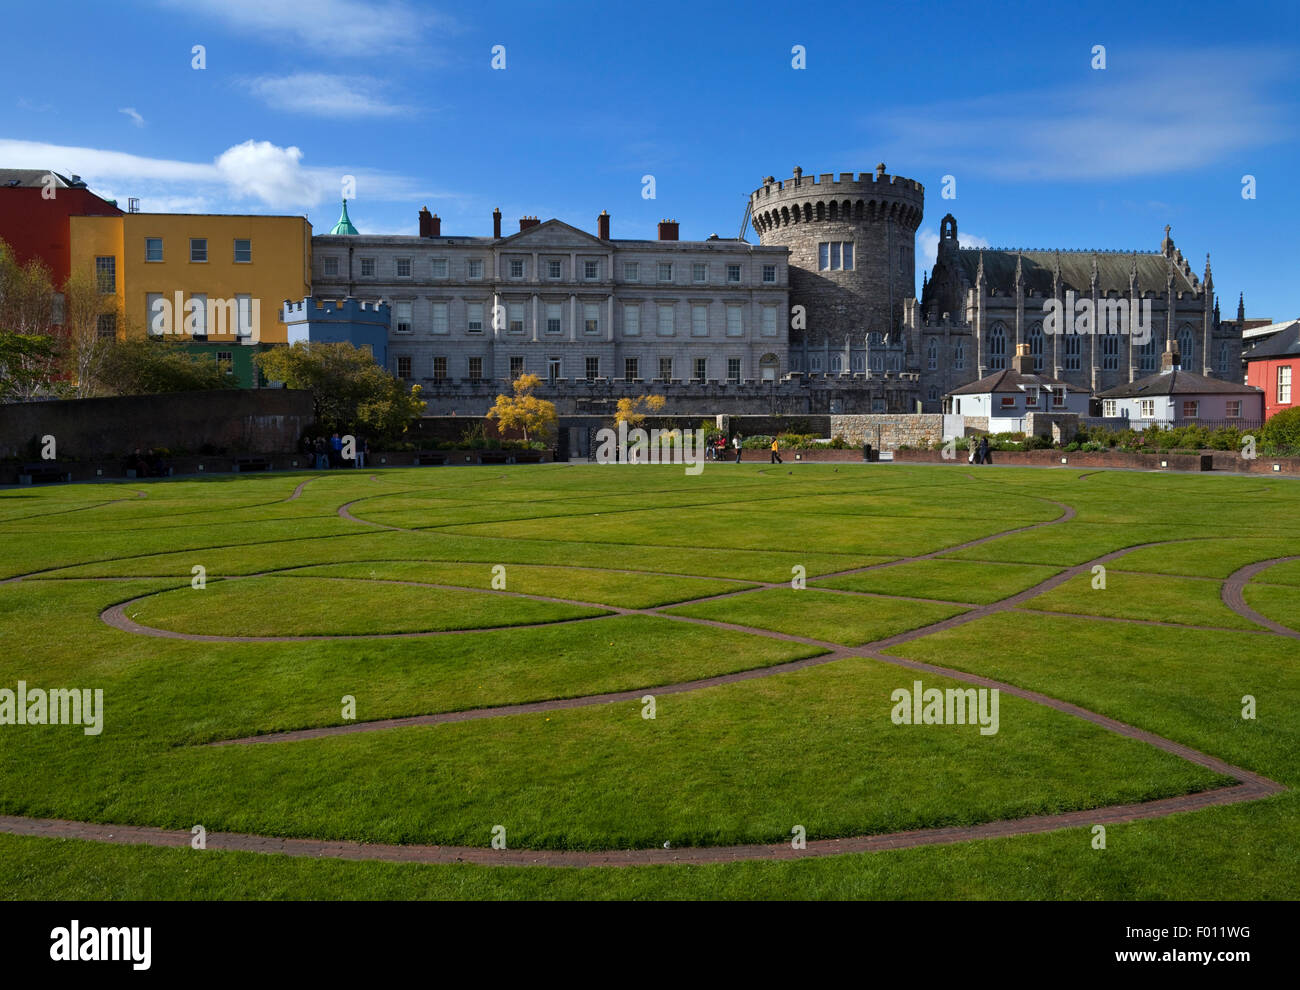 La torre di record, la Cappella Reale e altri edifici dalle Dubh Linn Giardini dietro il Castello di Dublino, Dublino, Irlanda Foto Stock